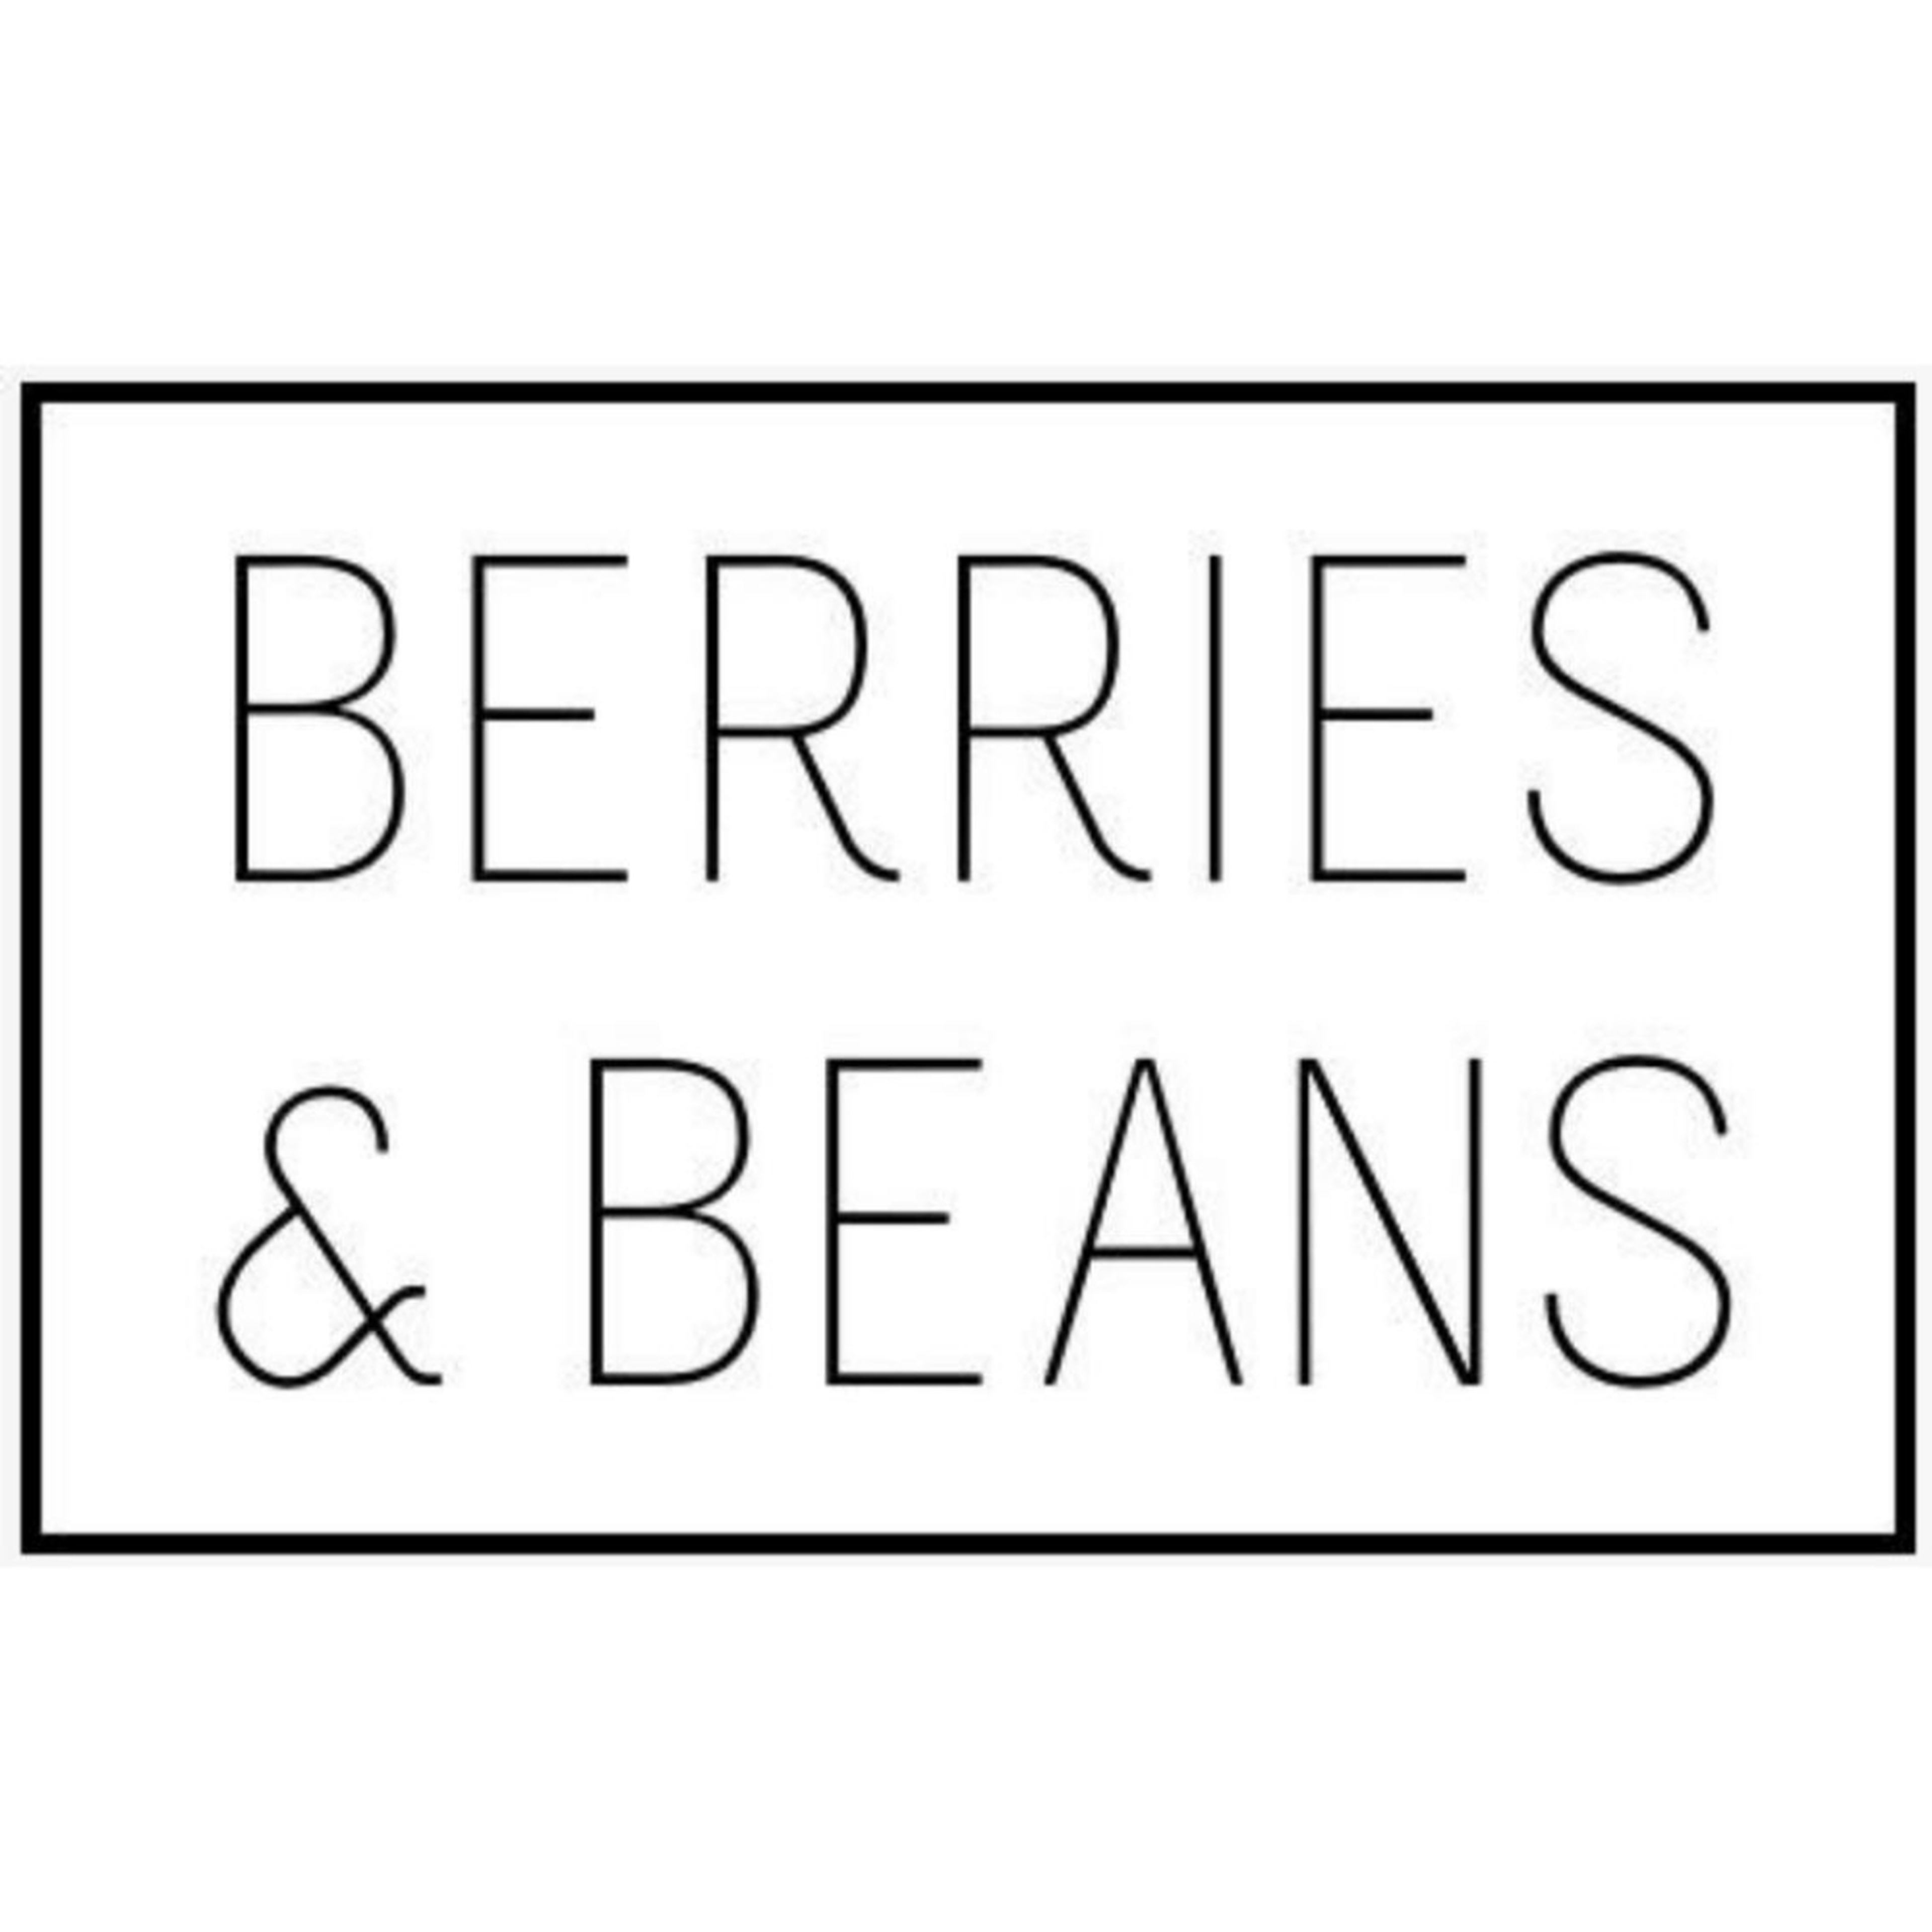 Berries & Beans